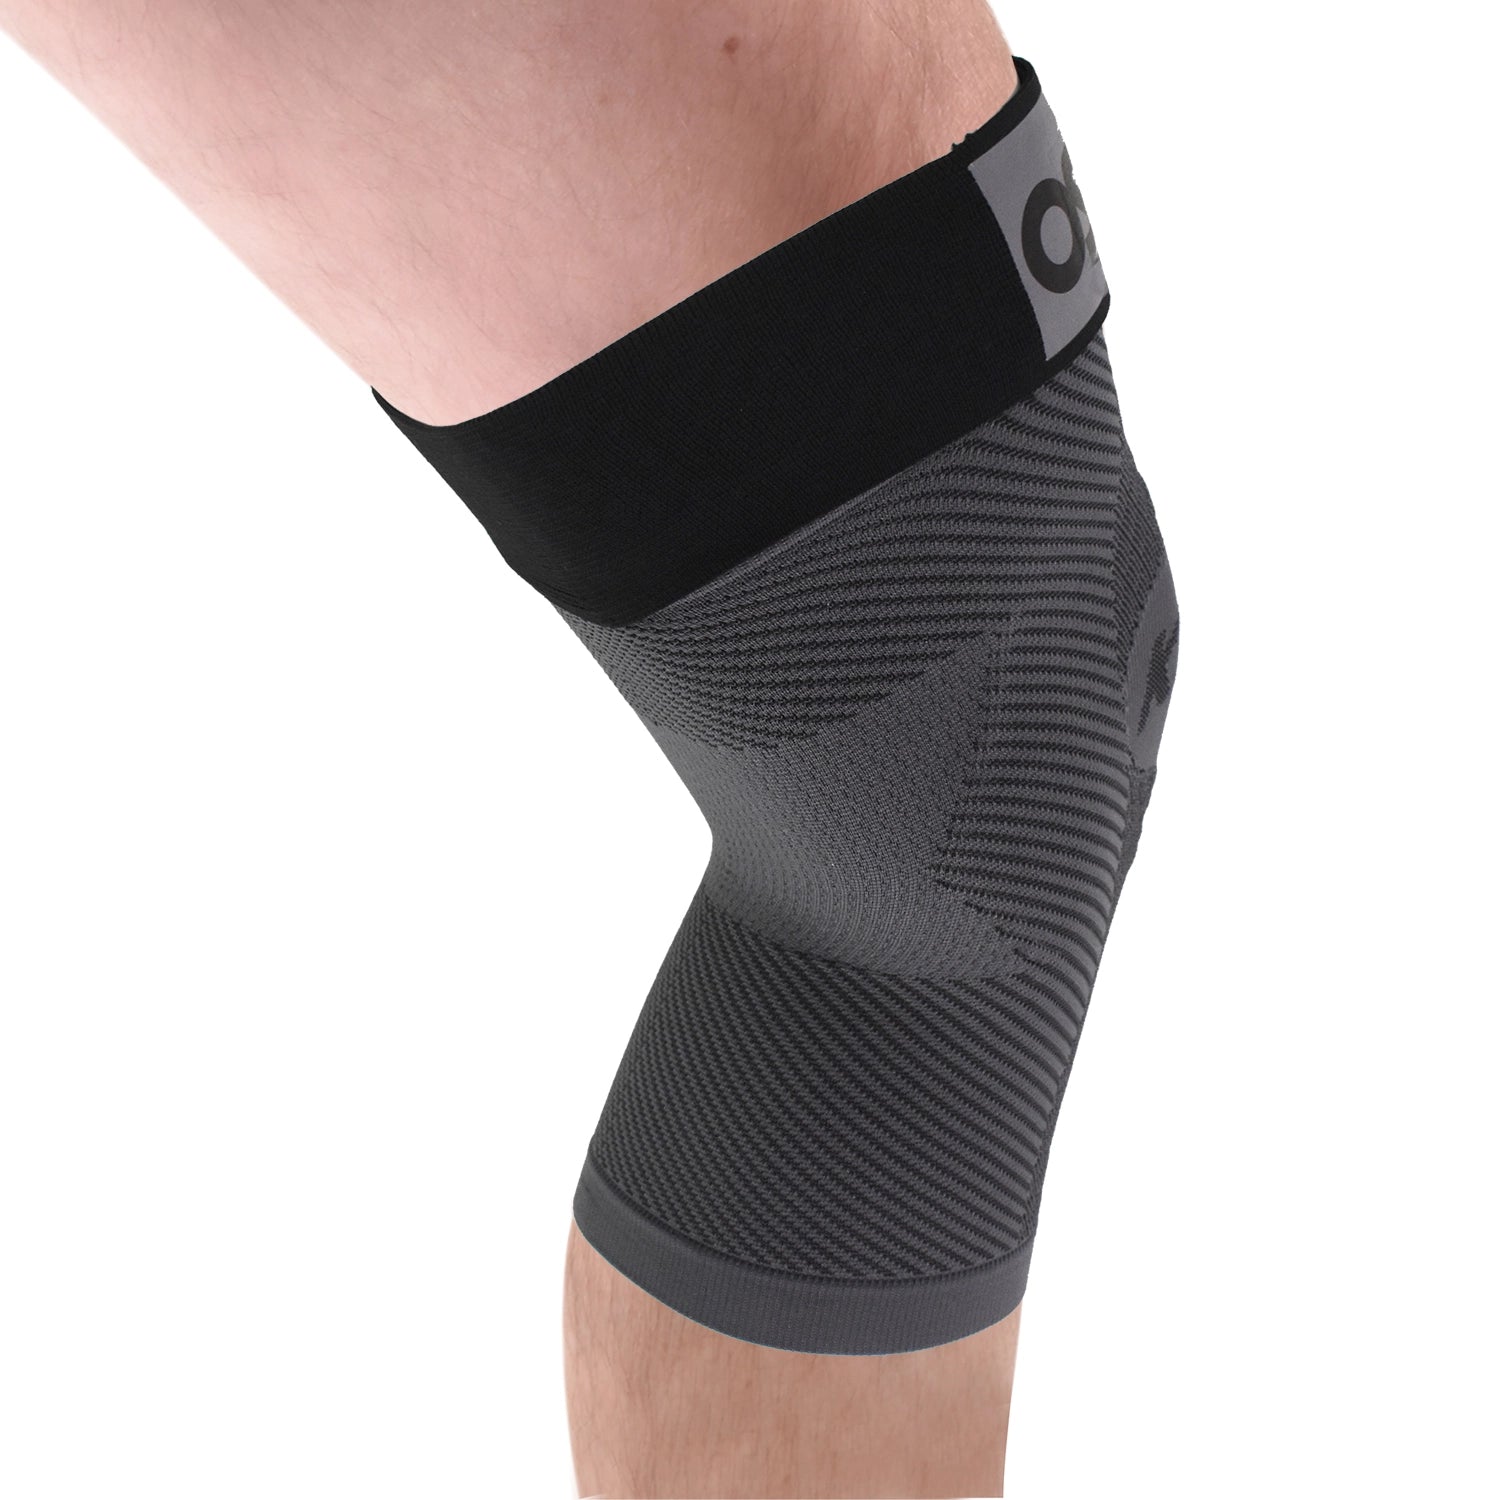 Adjustable Knee Brace - The KS7+